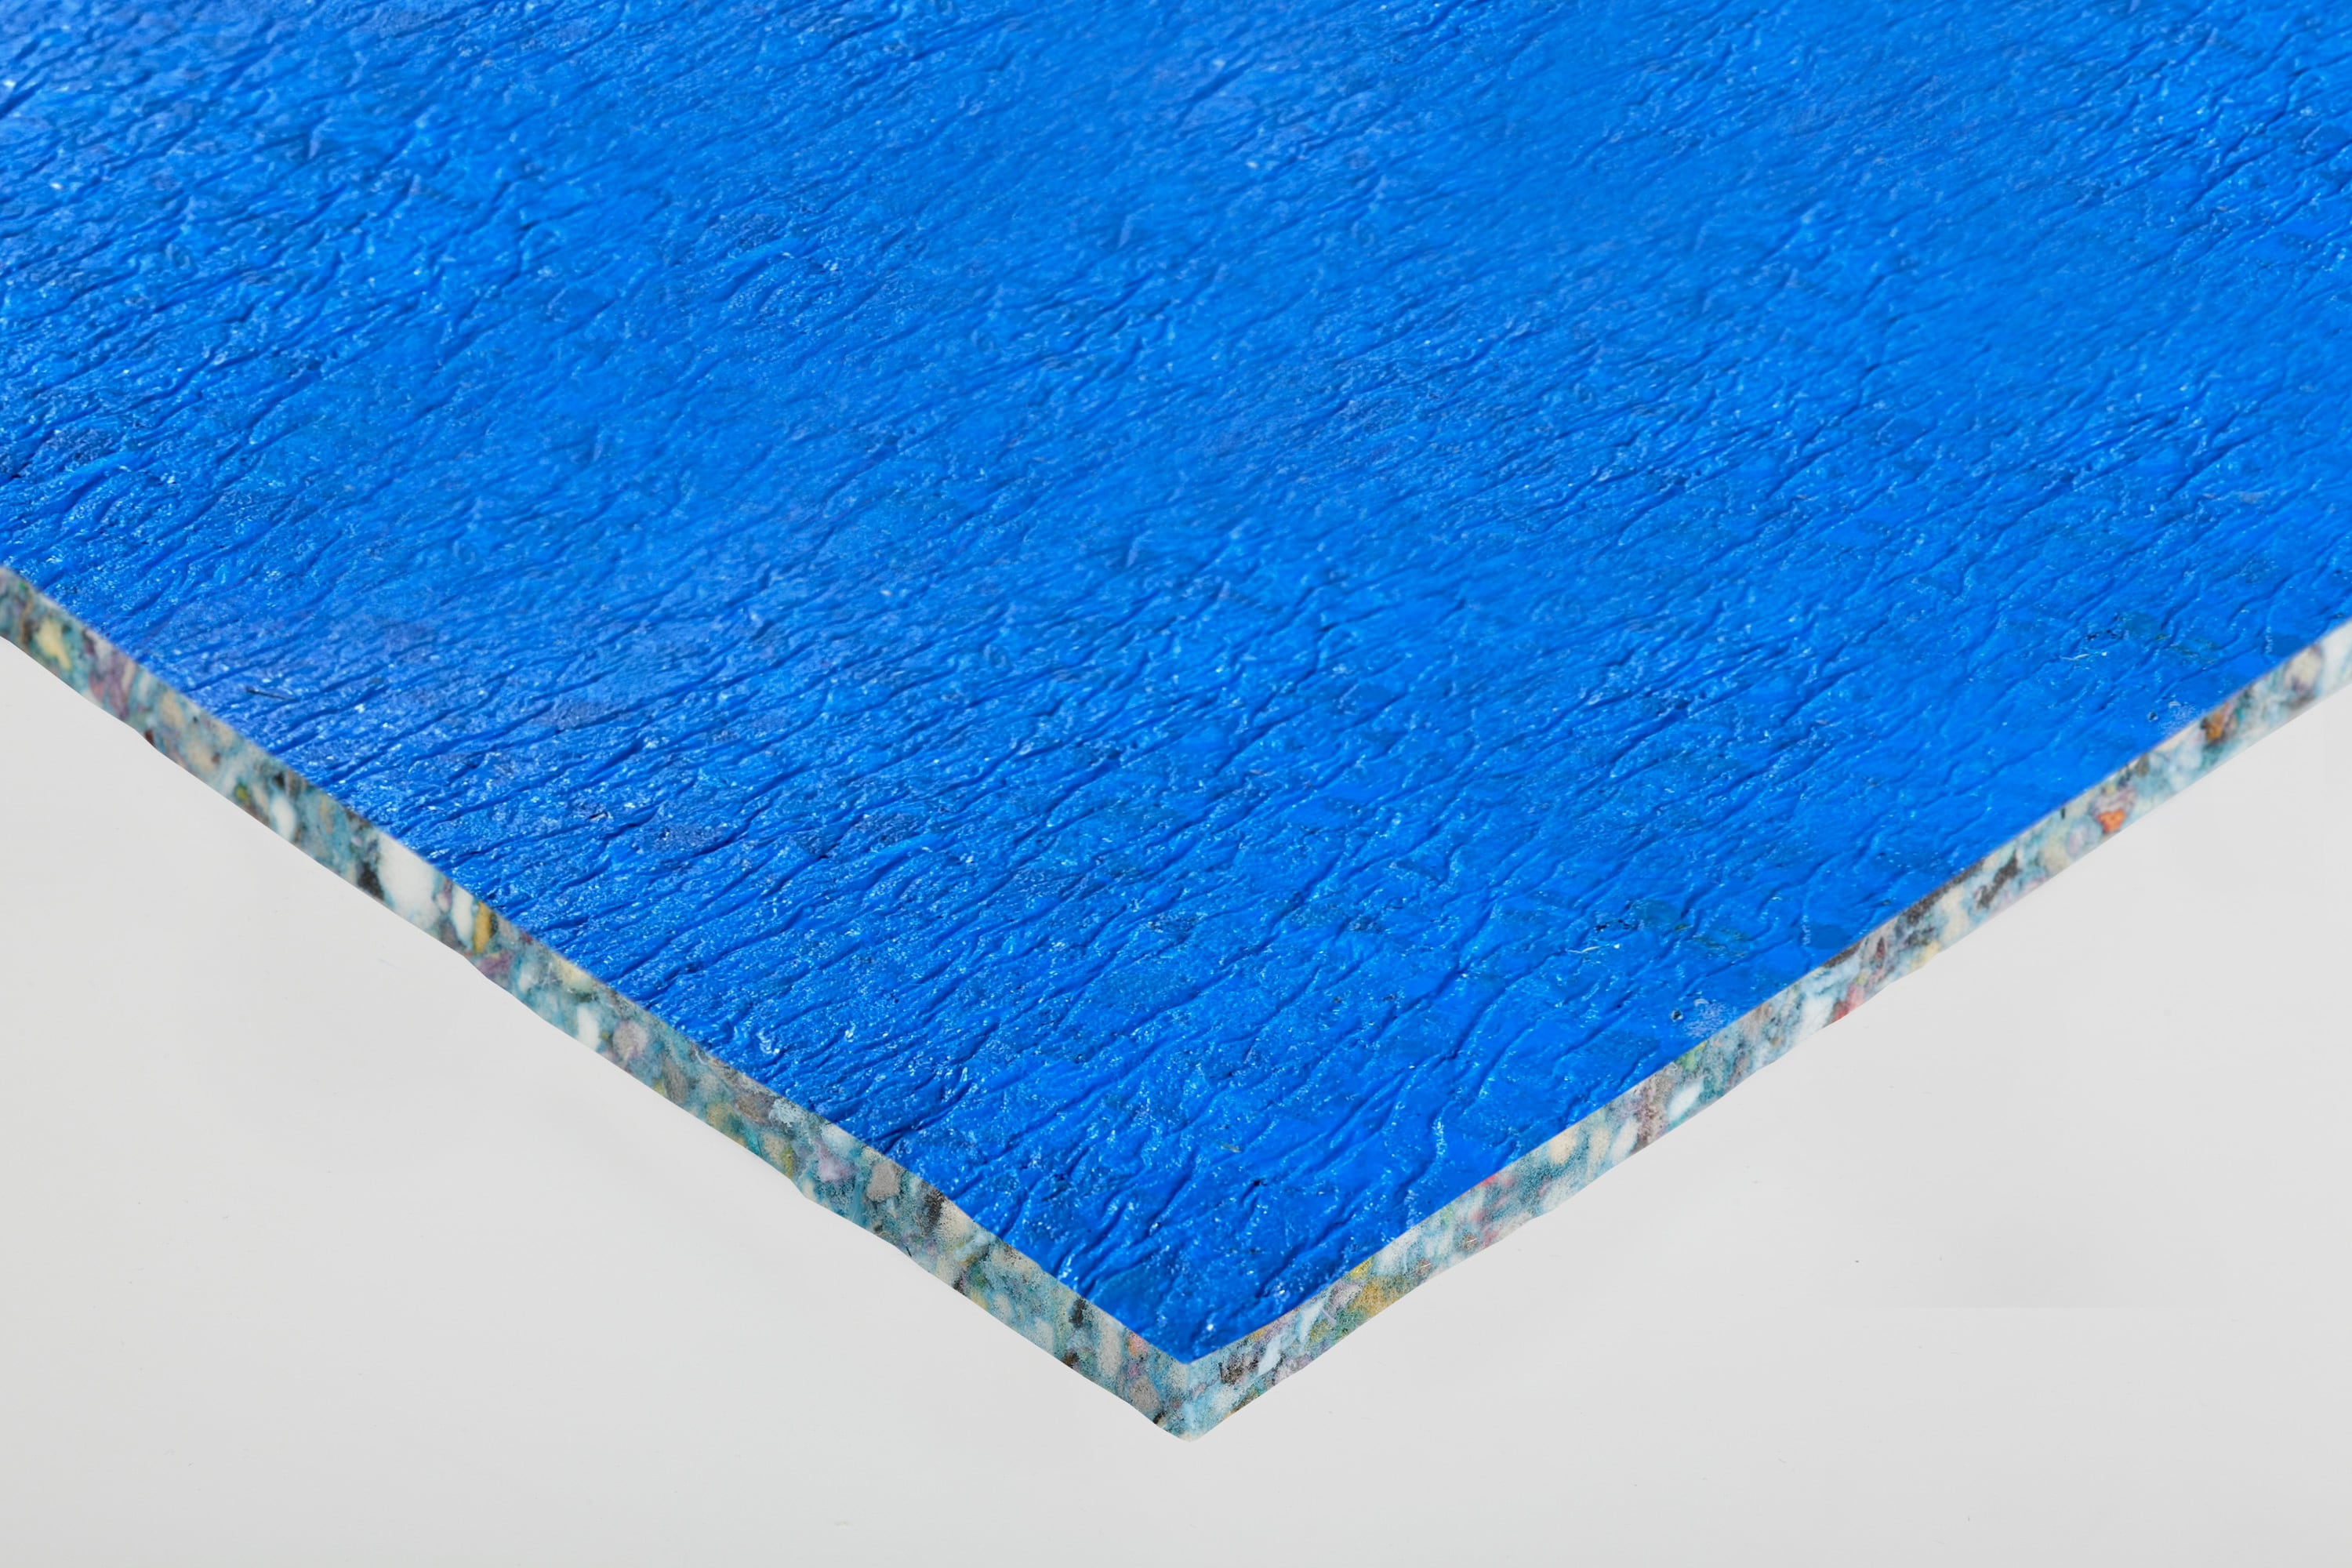 leggett-platt-rebond-carpet-padding-with-moisture-barrier-in-the